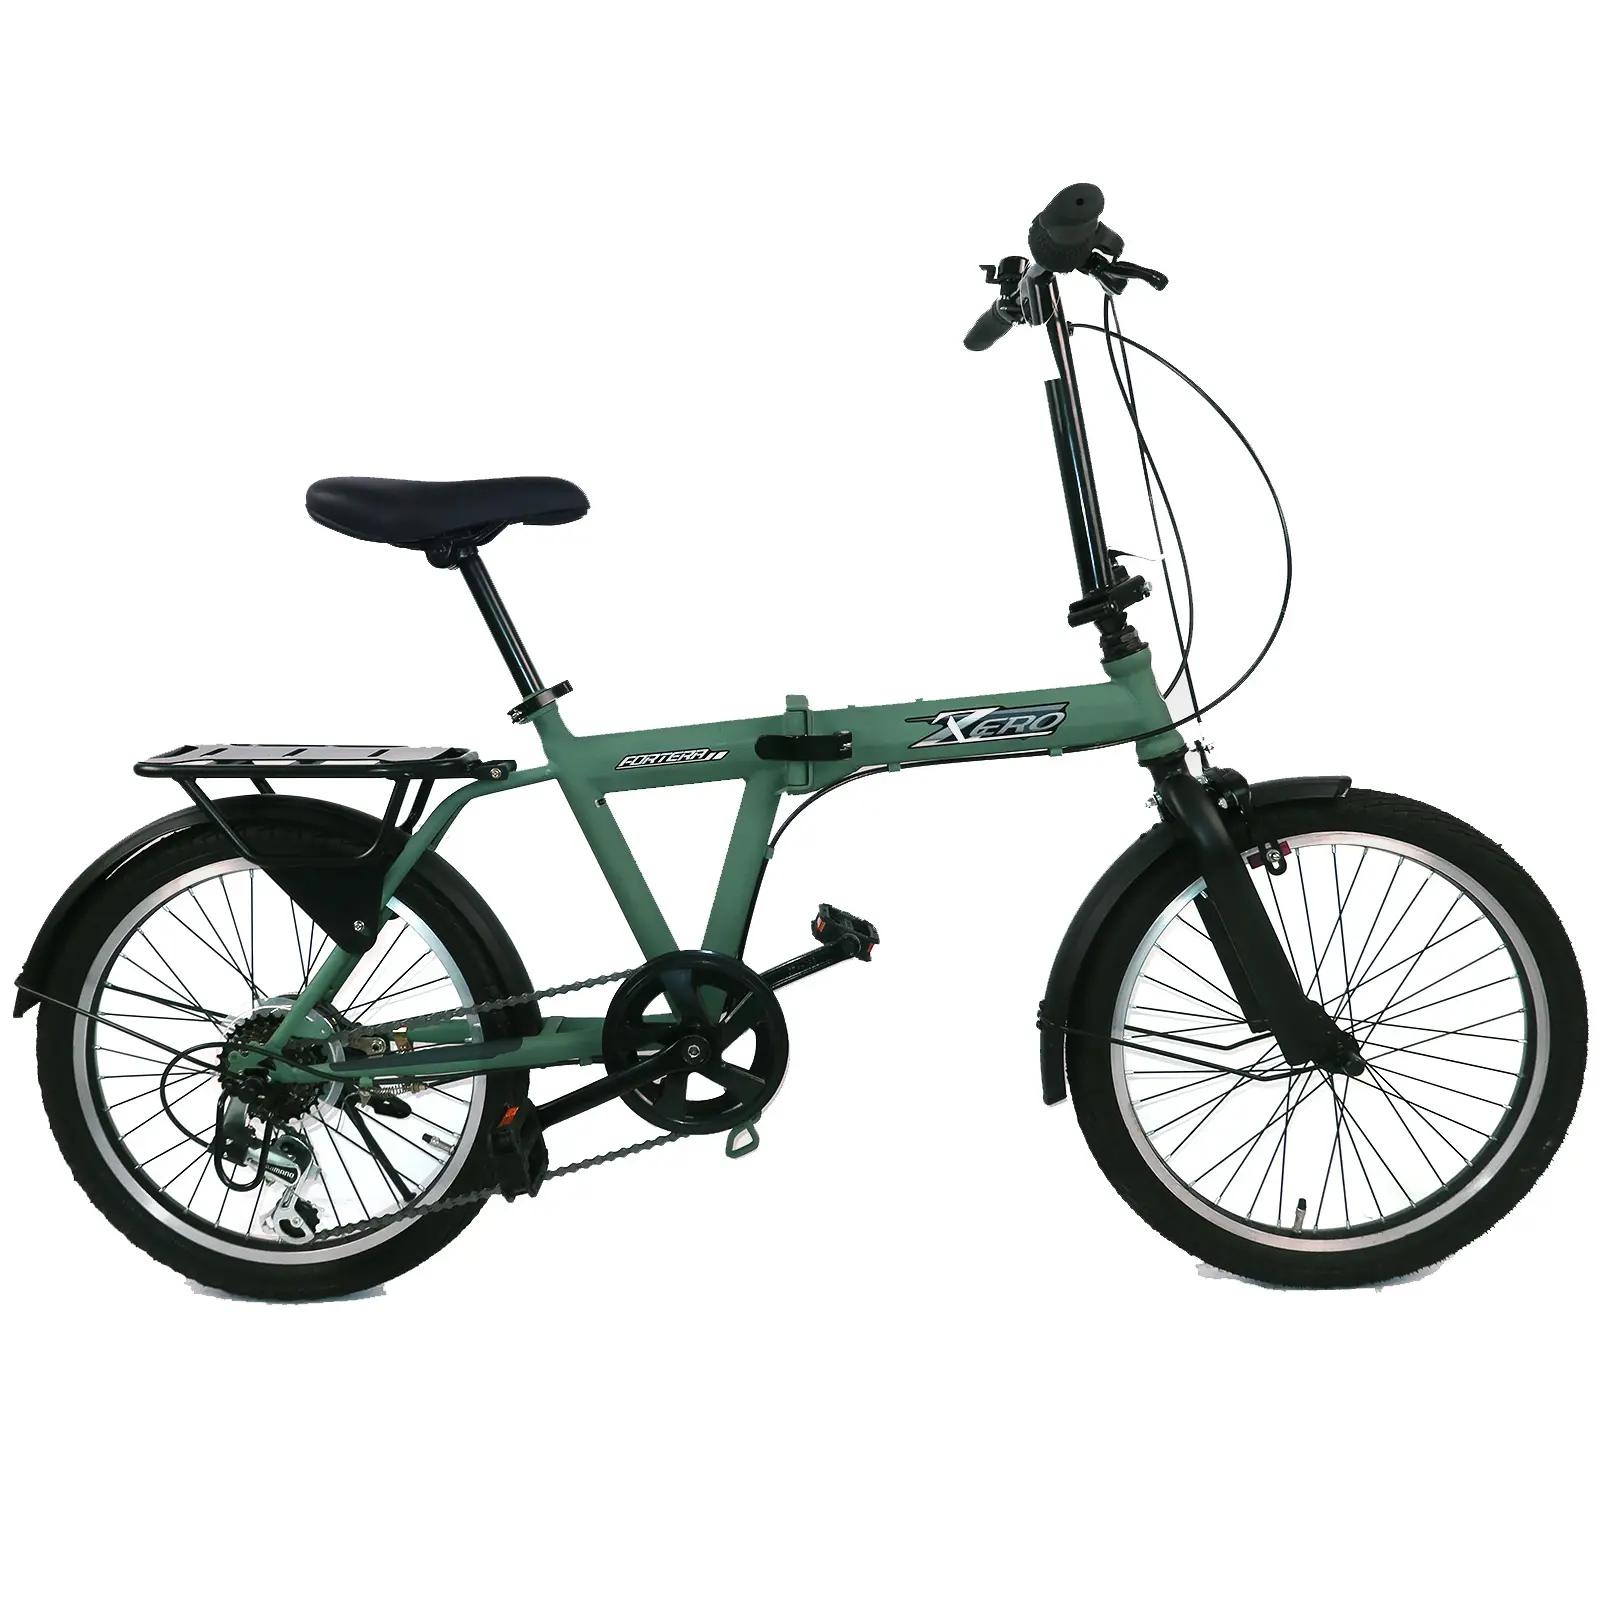 Vélo pliable léger de 20 pouces pour l'école, le travail et le voyage peuvent être mis dans le coffre.